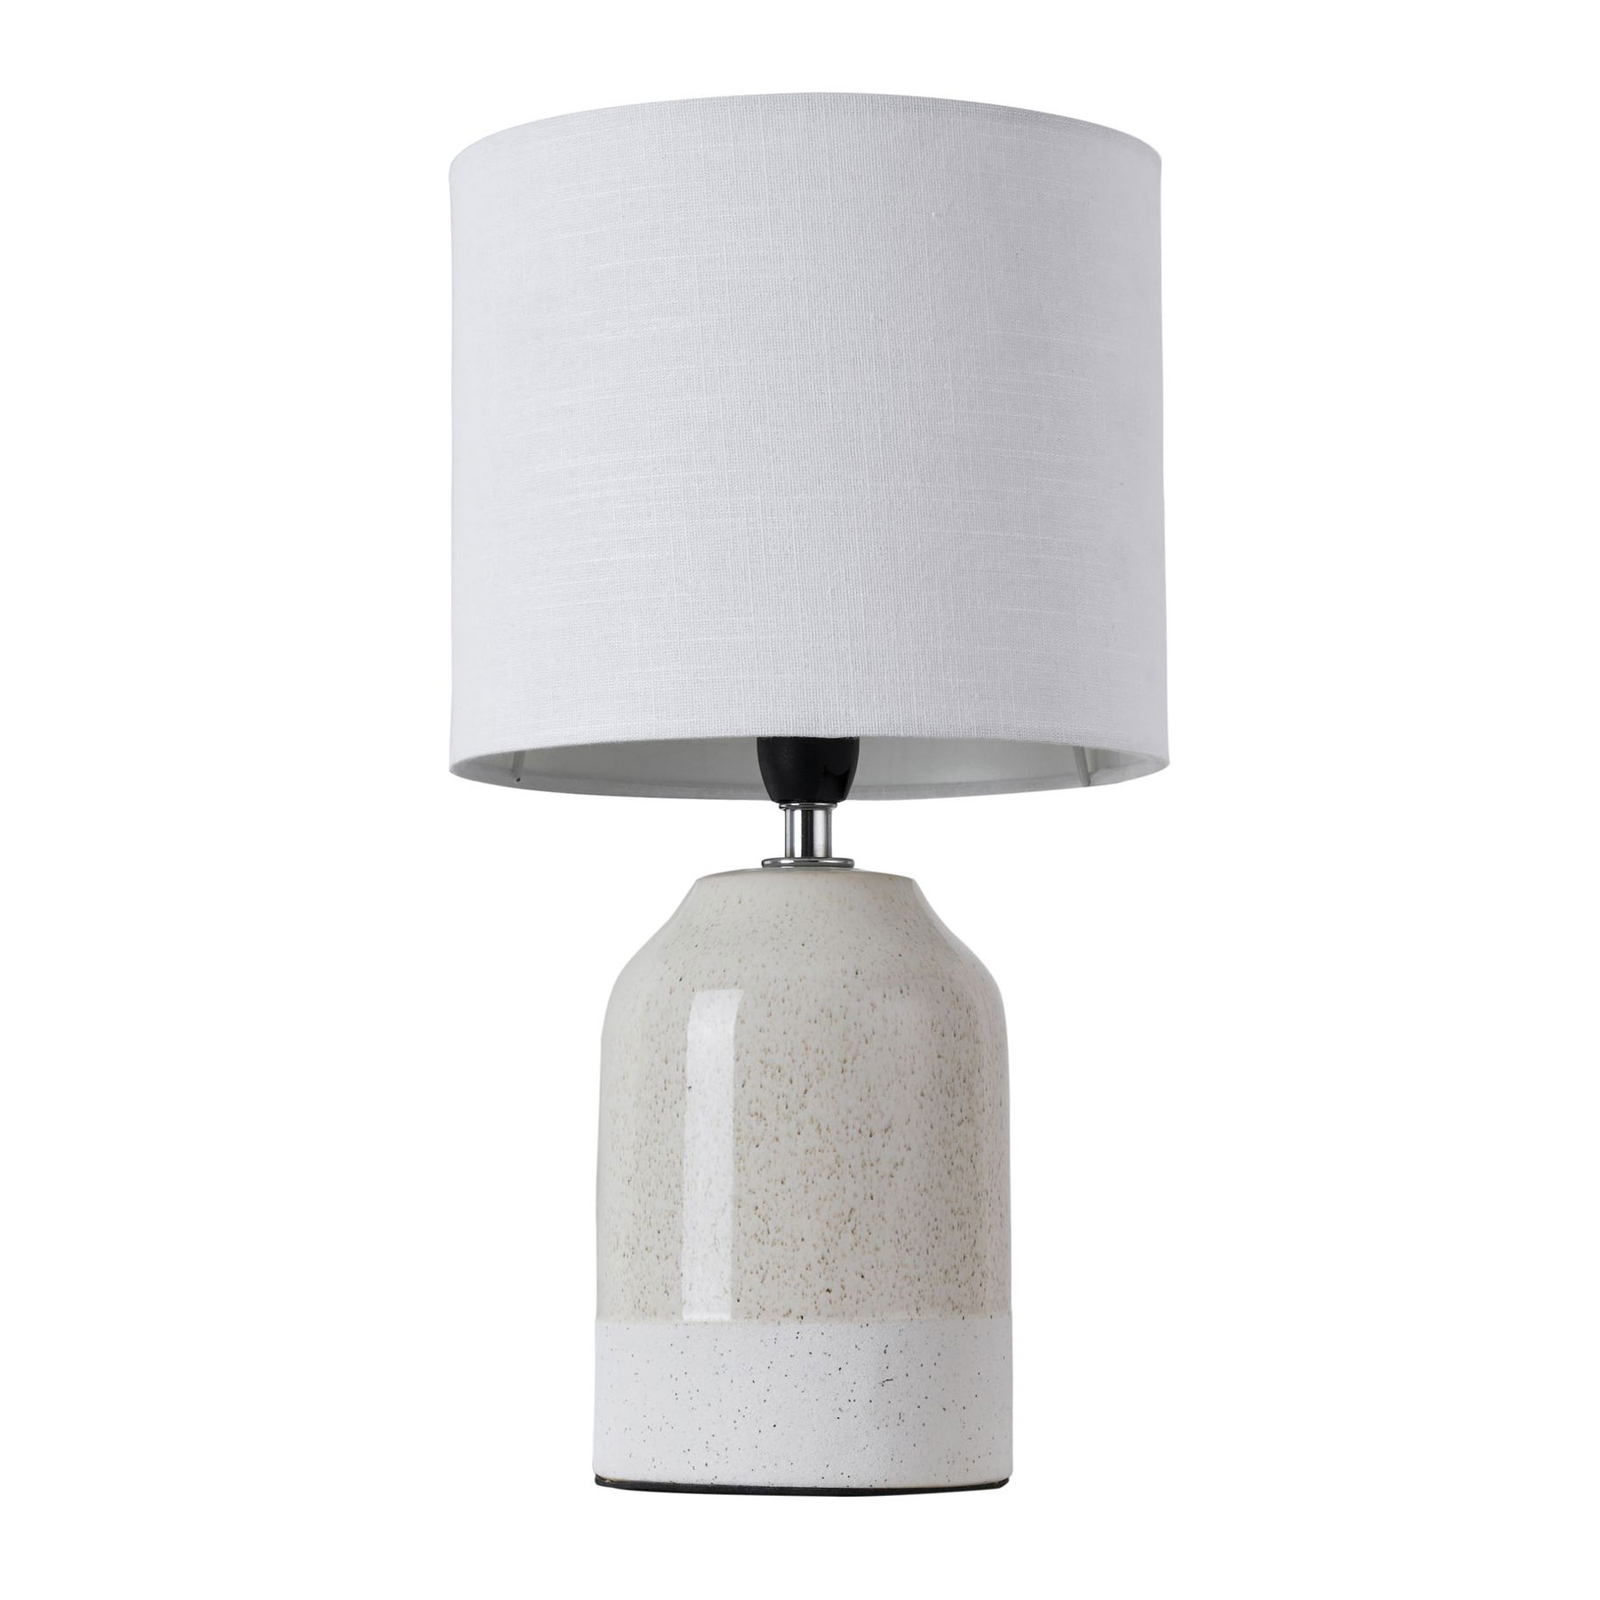 Pauleen Sandy Glow lampada da tavolo, bianco/beige